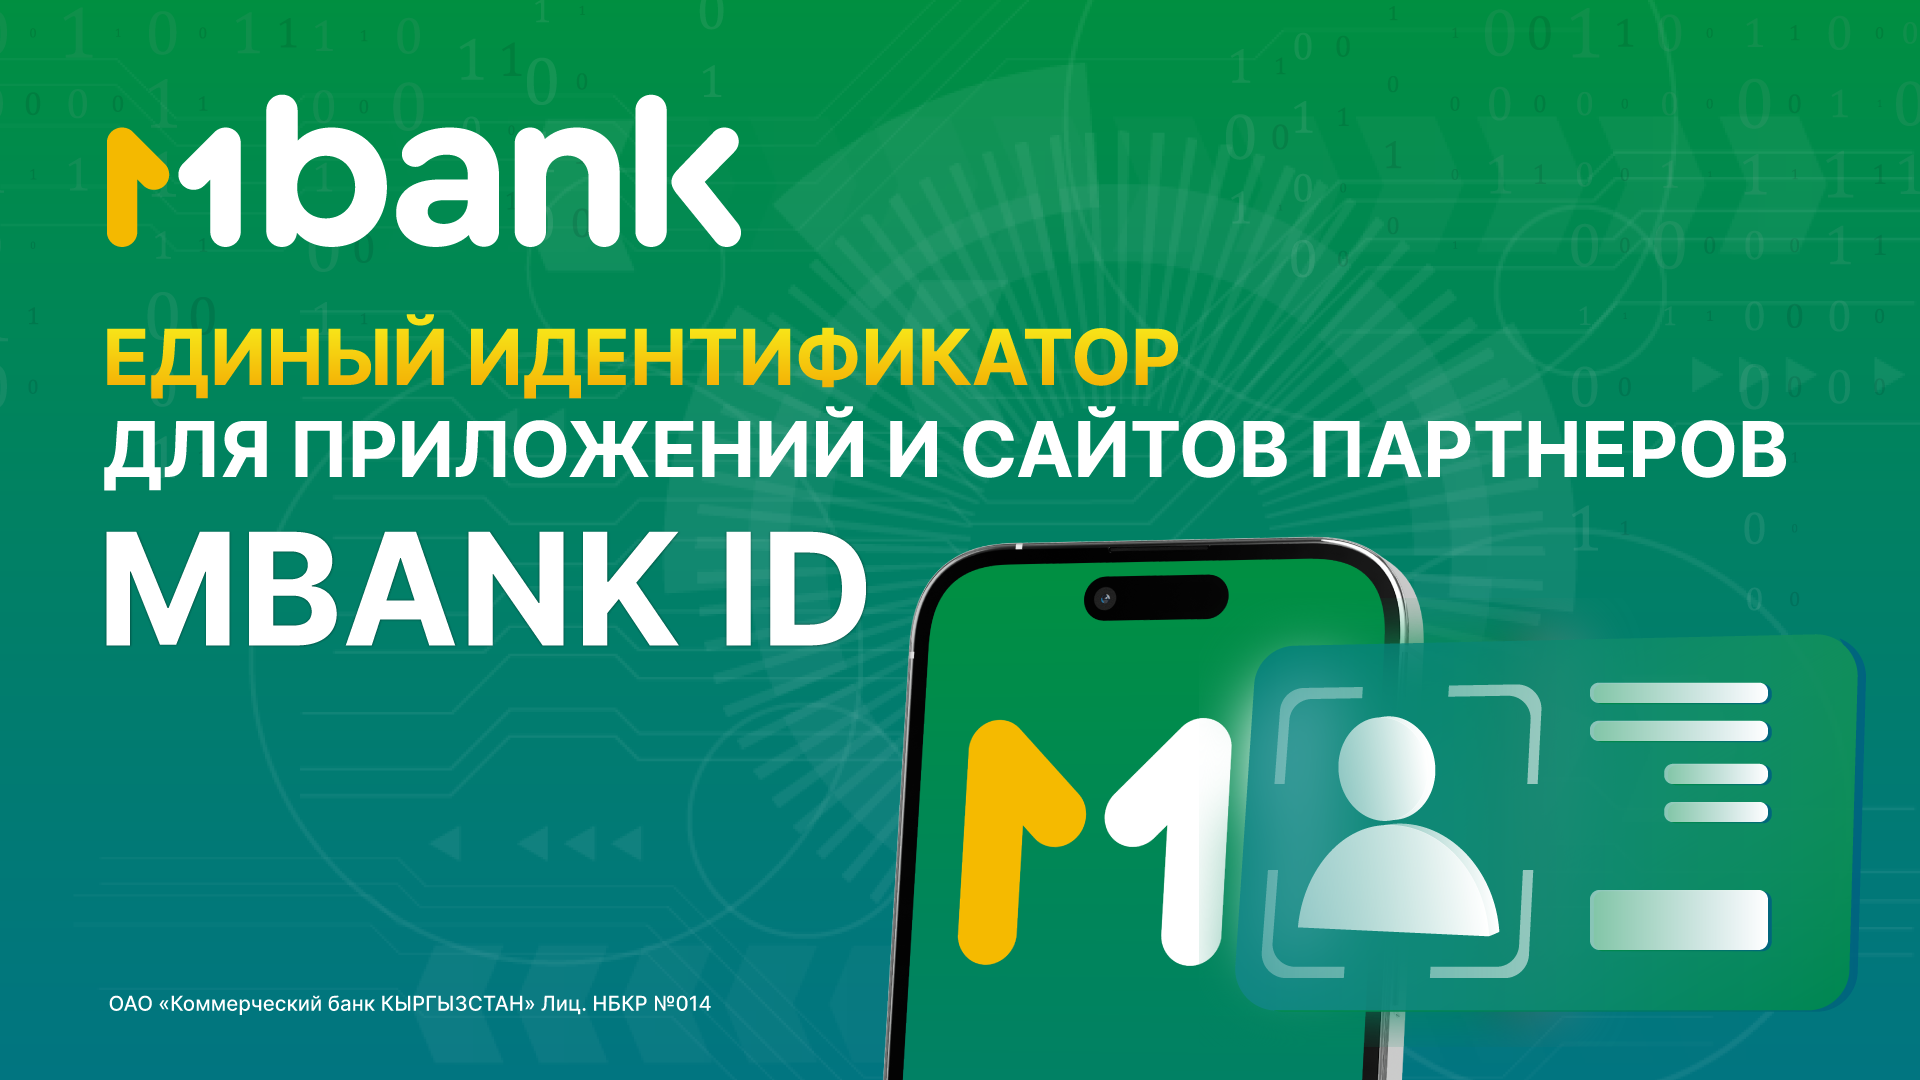 Впервые в Кыргызстане: единый идентификатор MBANK ID